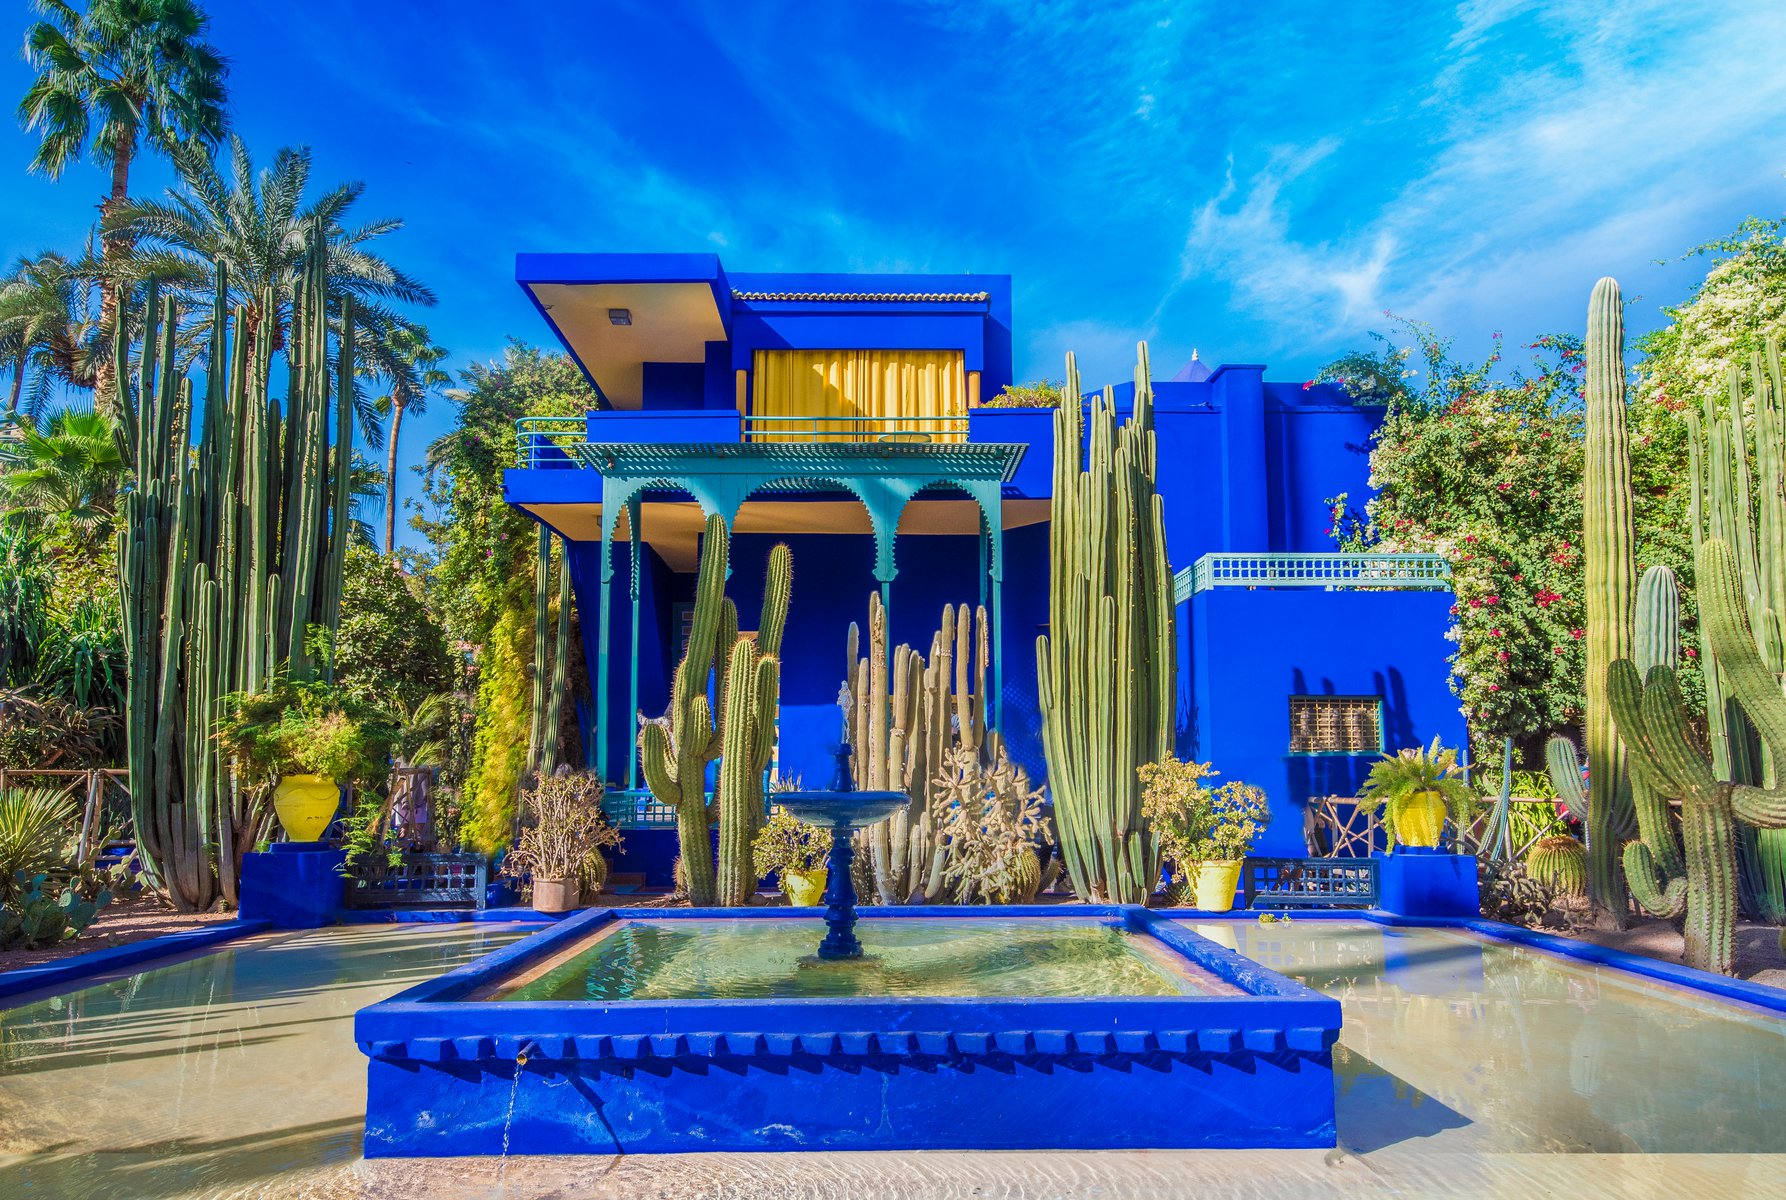 Jardin Majorelle: Οι κήποι του Μαρόκο με την μοναδική μπλε βίλα του Yves Saint Laurent – Εντυπωσιάζουν εδώ και 90 χρόνια